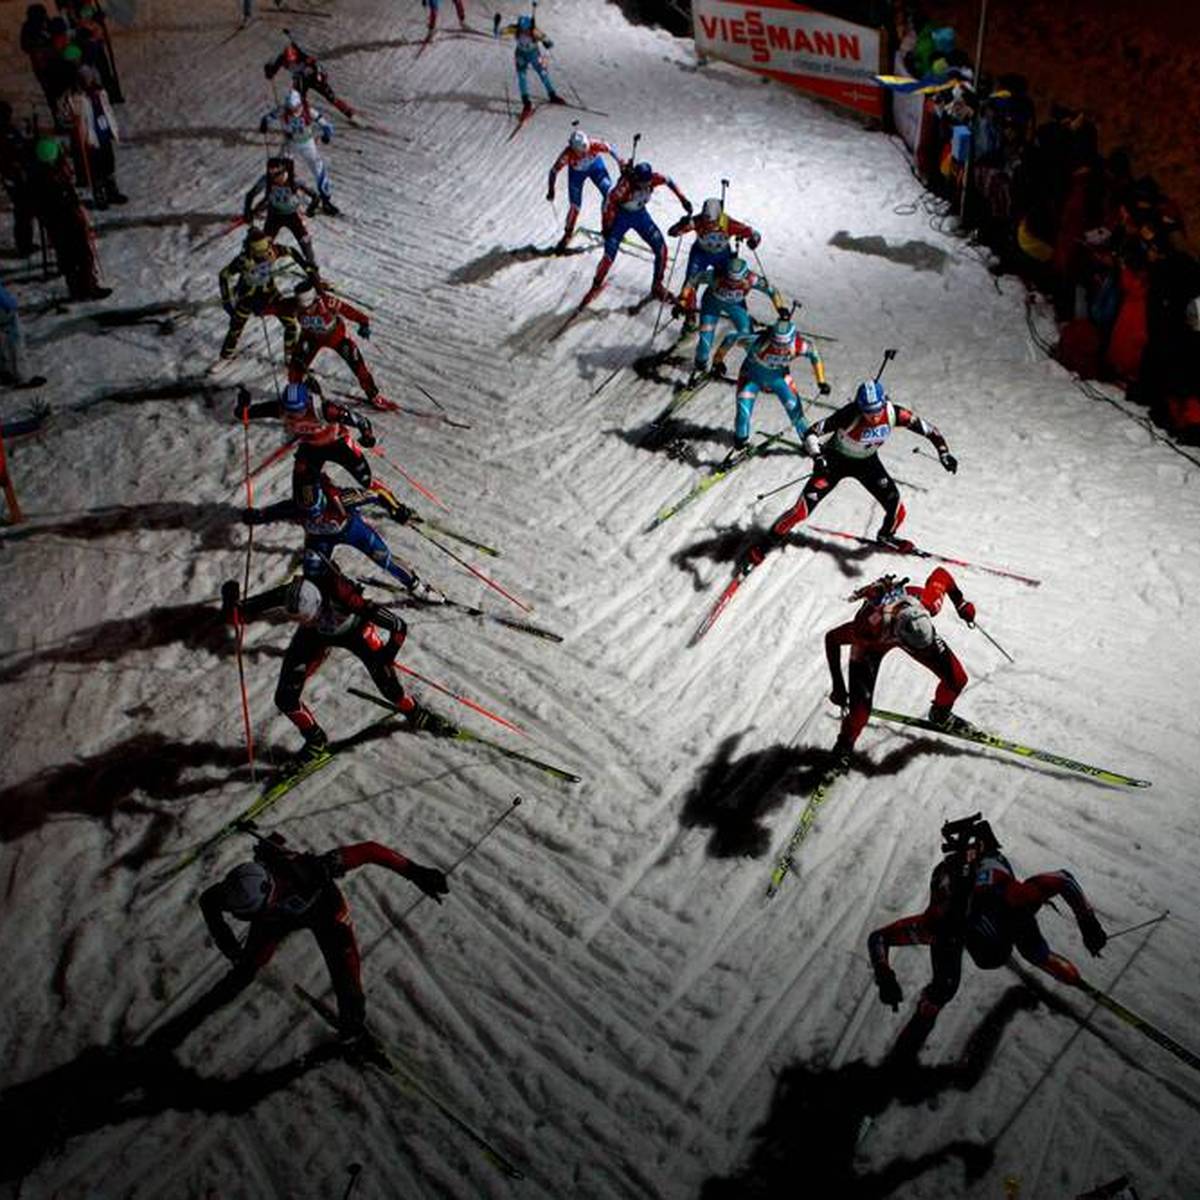 Der Biathlon steuert offenbar auf ein riesiges Betrugs-Problem zu. Nach dem endgültigen Verbot von Fluorwachsen erhebt das schwedische Technikteam schwere Vorwürfe.